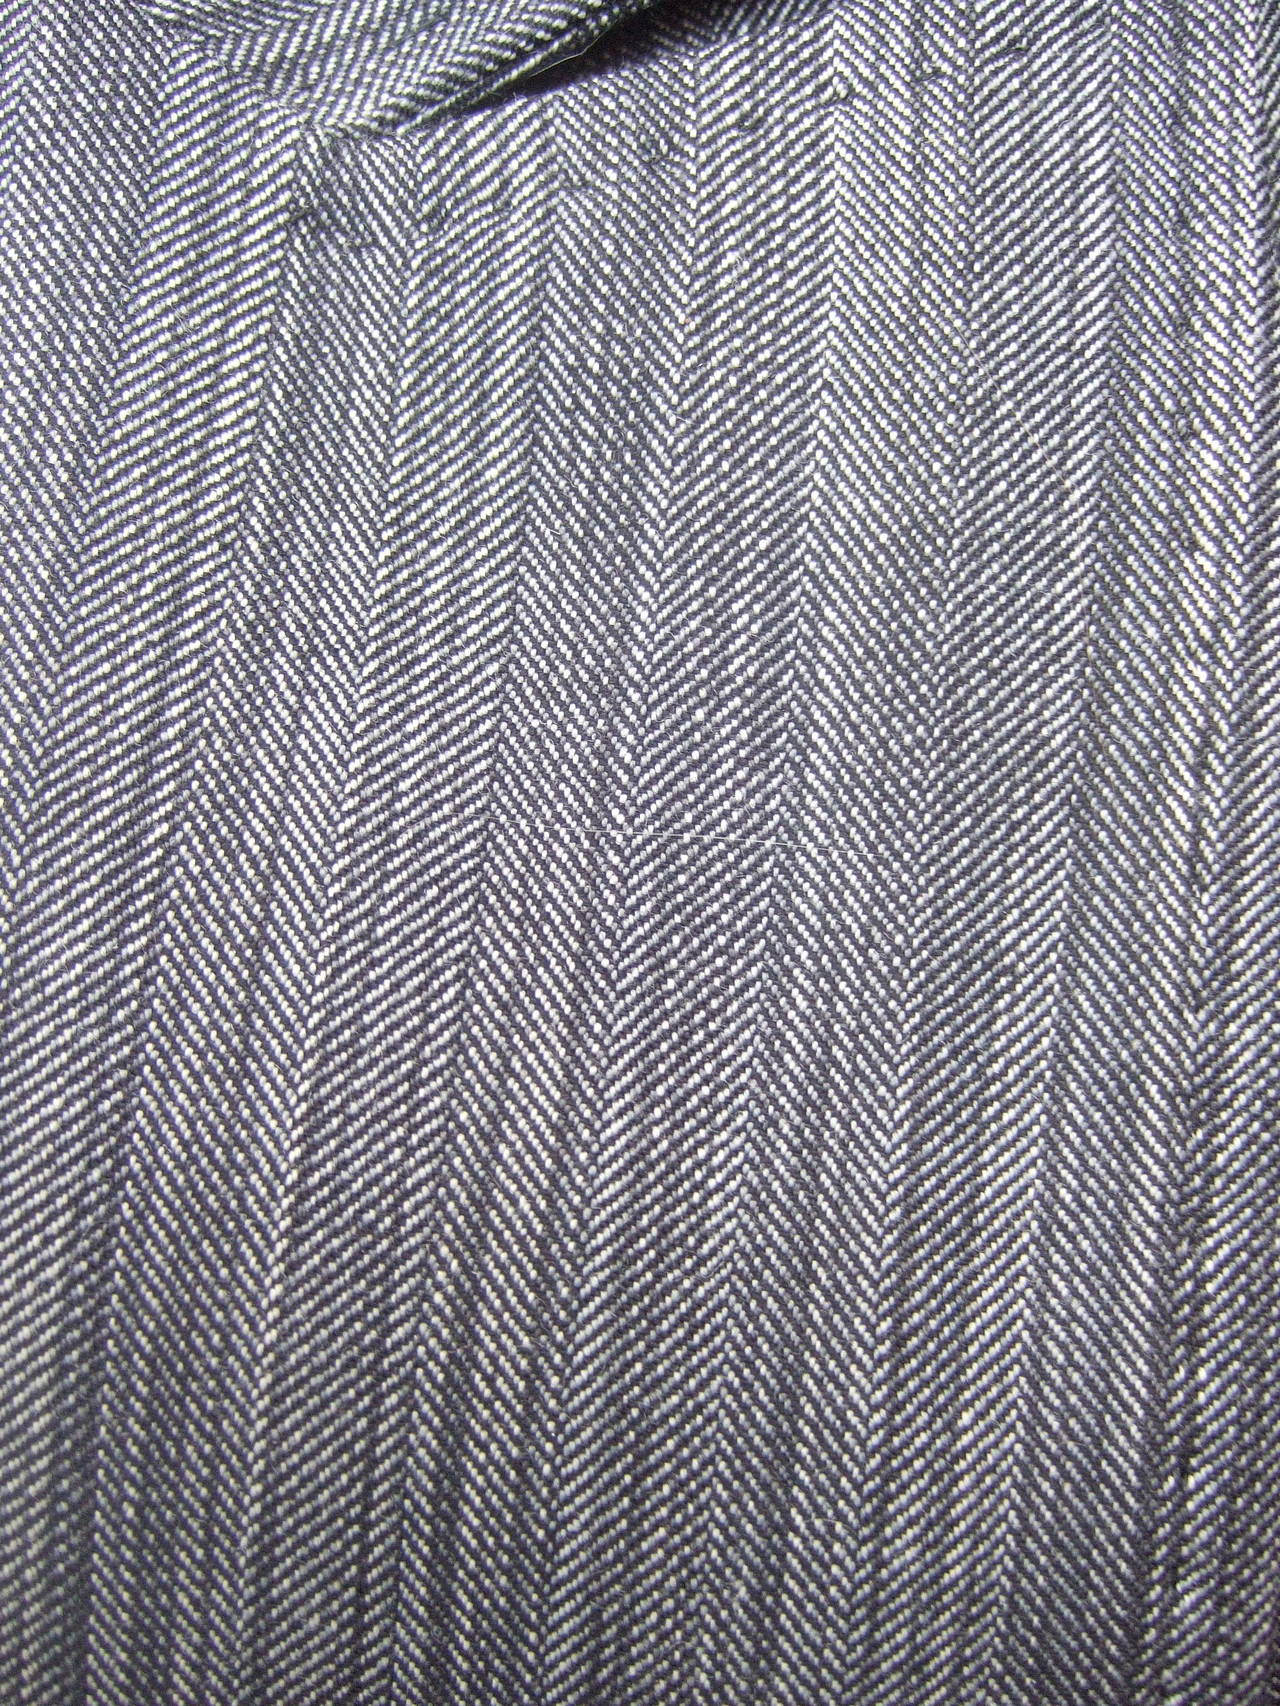 Maßgeschneiderte Jacke von Herve Leger Paris aus grauer Wolle, US Größe 4 im Angebot 4